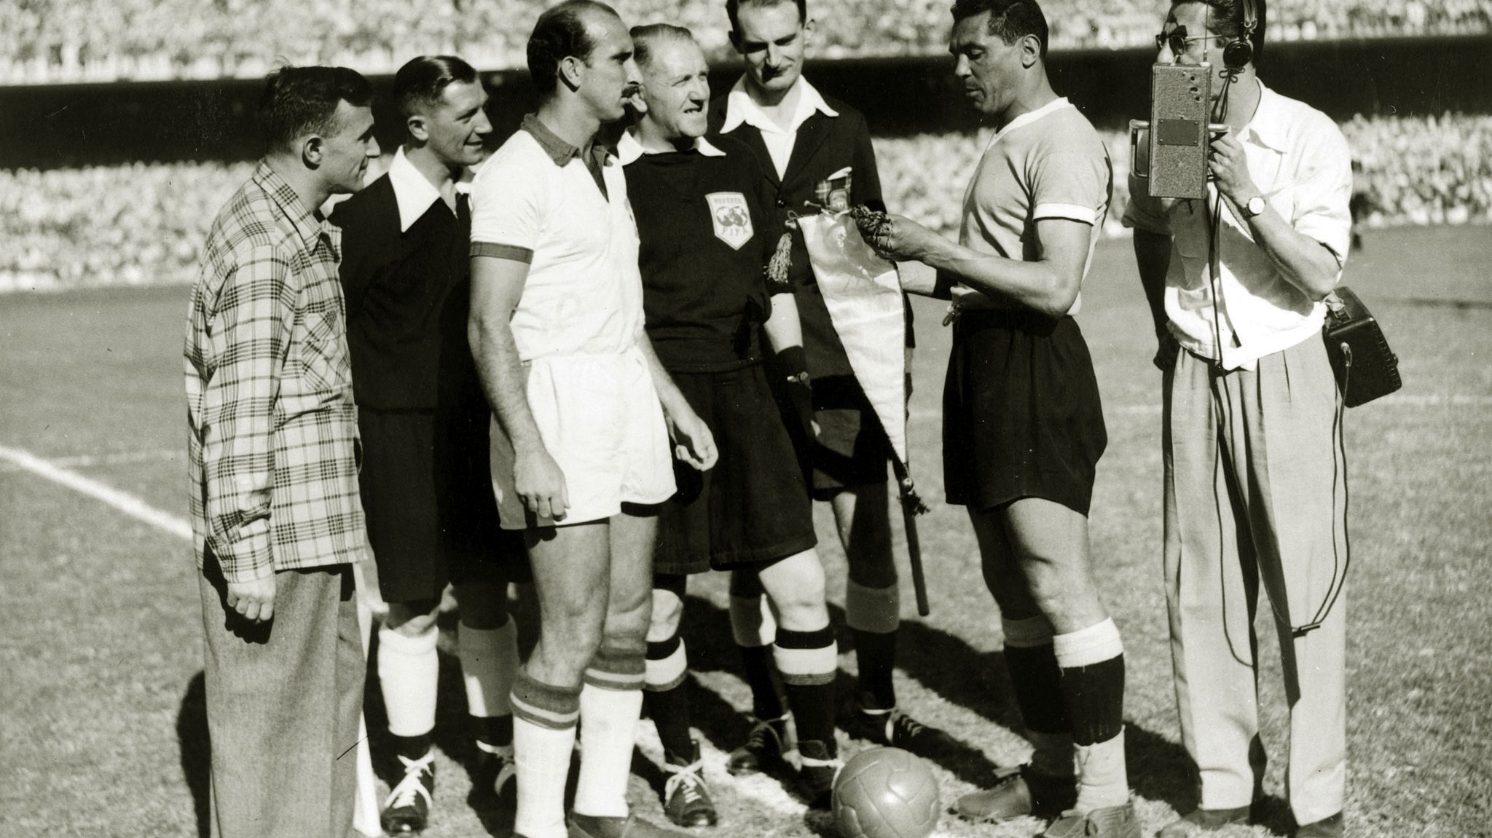 Edição dos Campeões: Uruguai Campeão da Copa do Mundo 1950